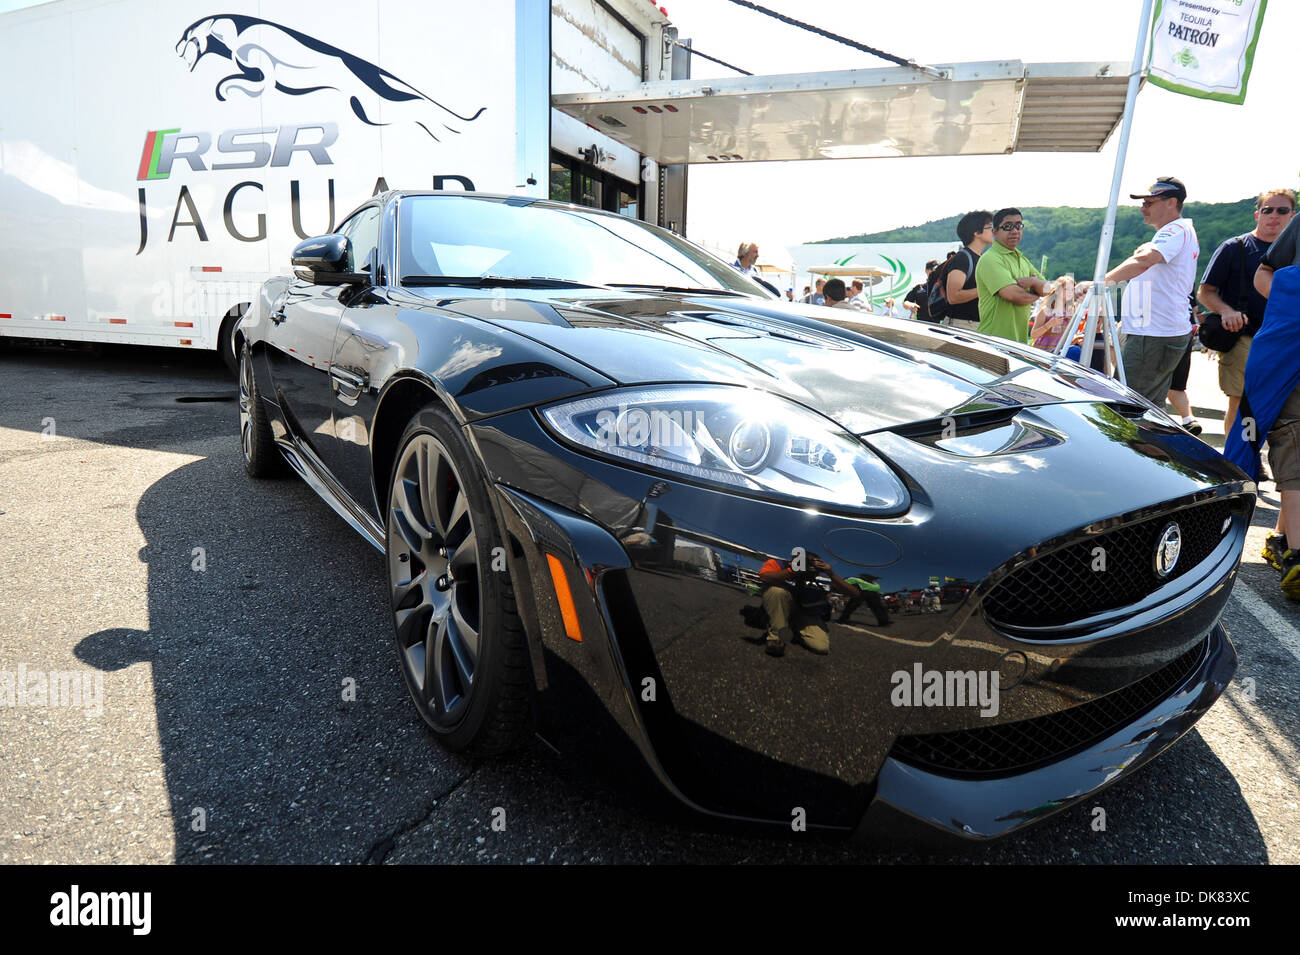 9 juillet 2011 - Lakeville, Connecticut, États-Unis - un Jaguar siège RS par l'équipe Jaguar camion et paddock avant le Grand Prix nord-est de l'aumône à Lime Rock Park. (Crédit Image : © Geoff Bolte/ZUMAPRESS.com) Southcreek/mondial Banque D'Images